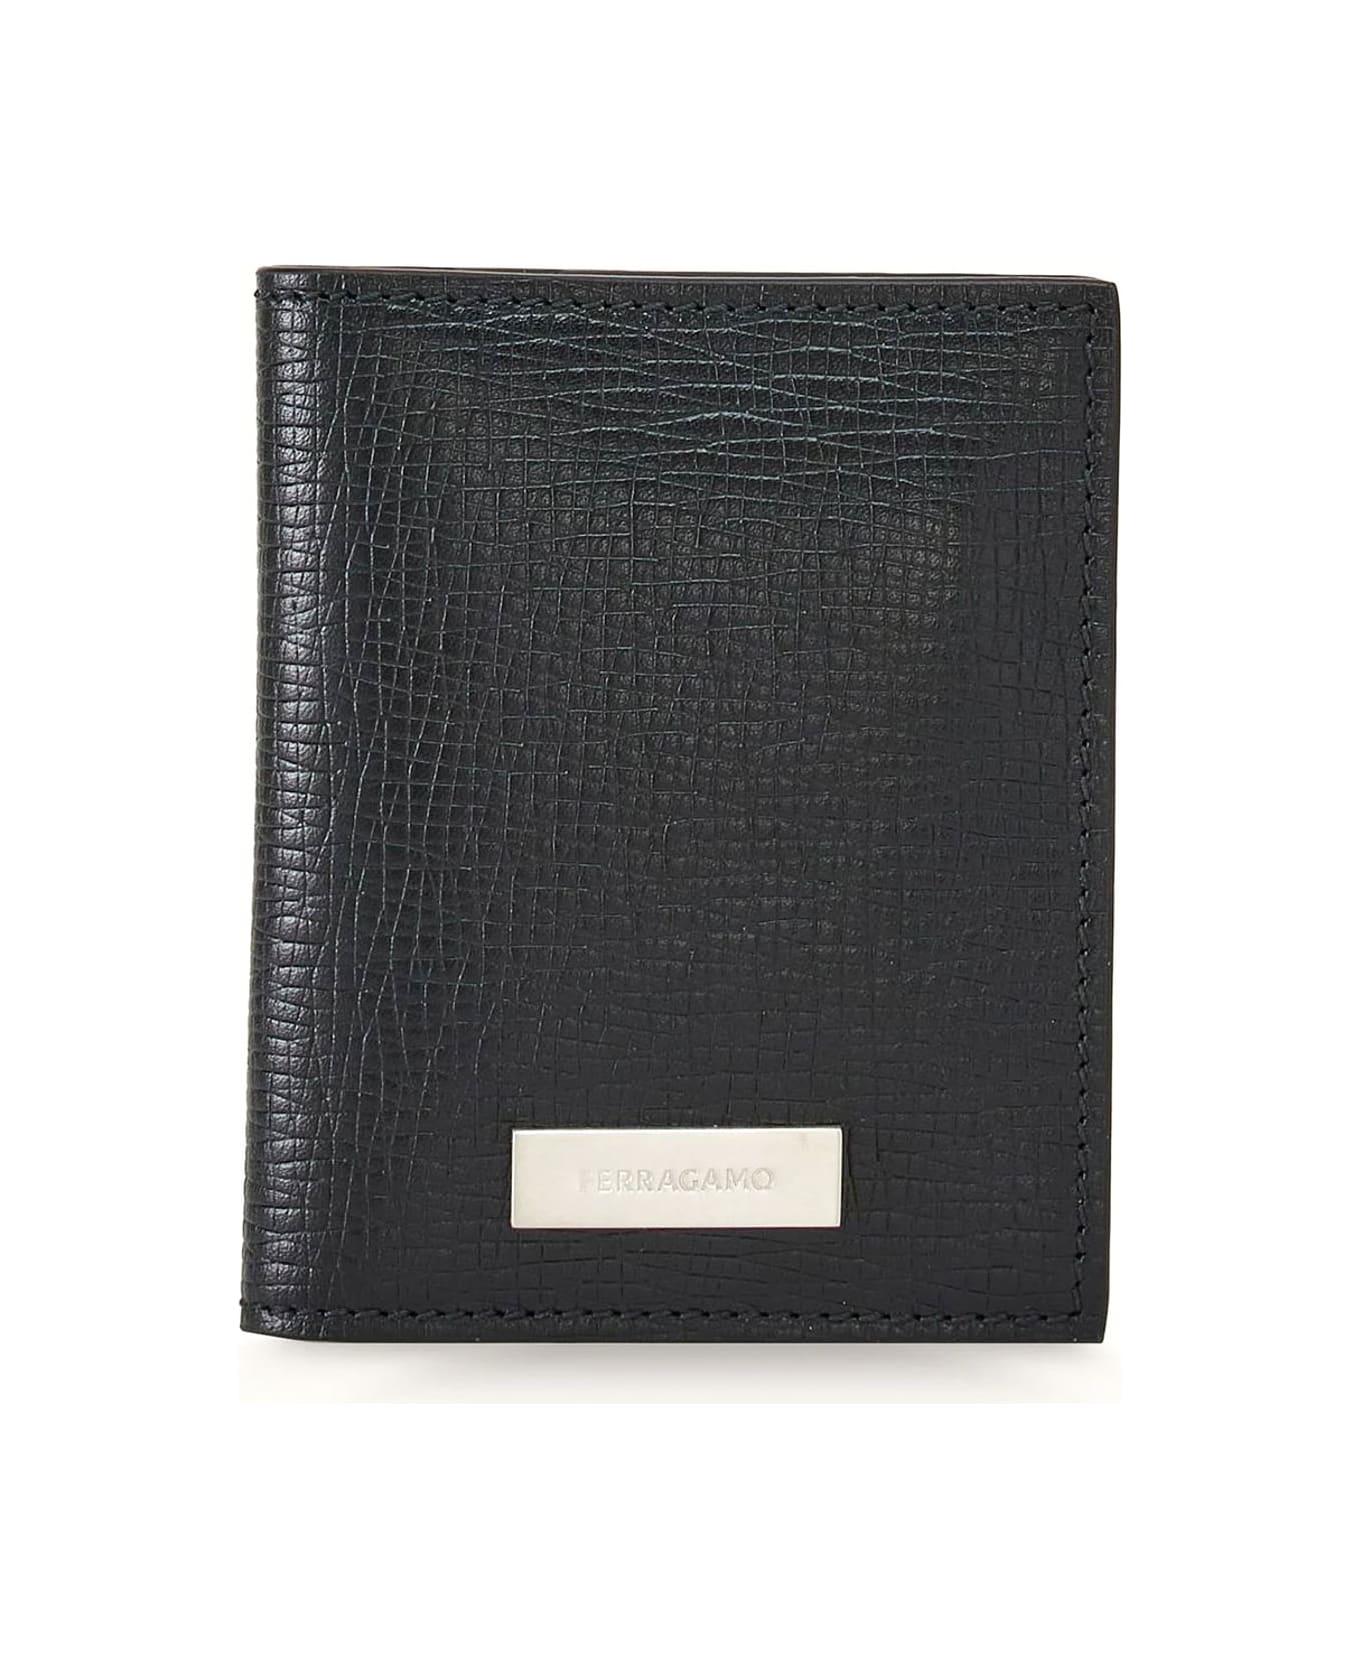 Ferragamo Hammered Calfskin Leather Card Holder - Black